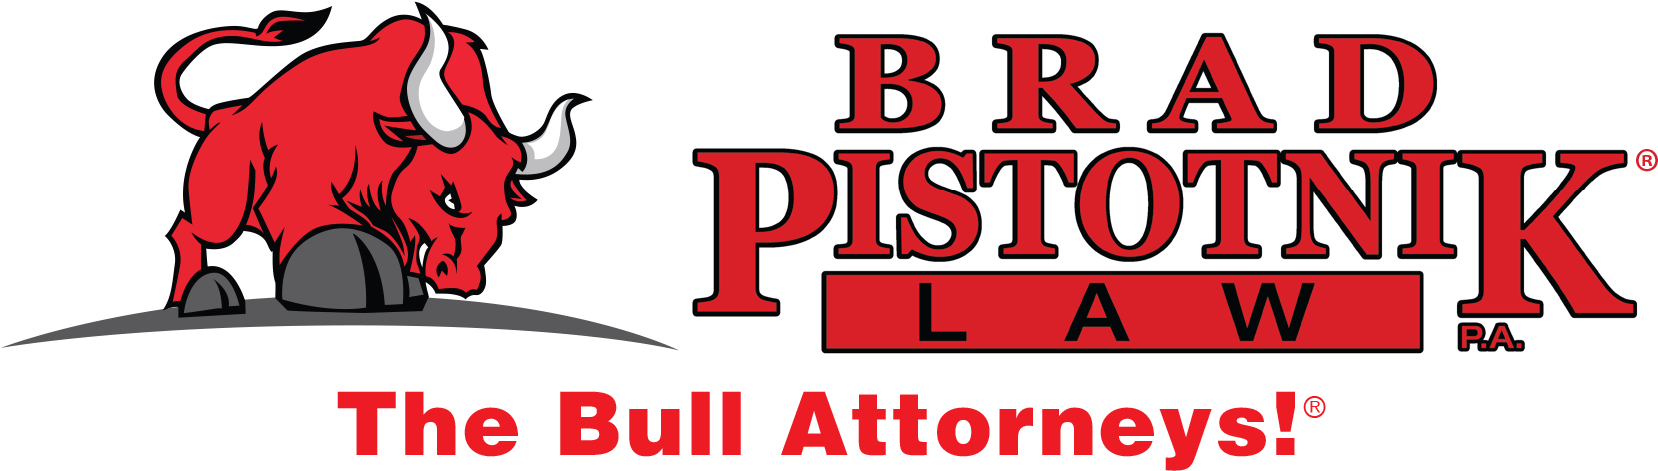 Brad Pistotnik Law - Brad Pistotnik Ad Clipart (1663x495), Png Download